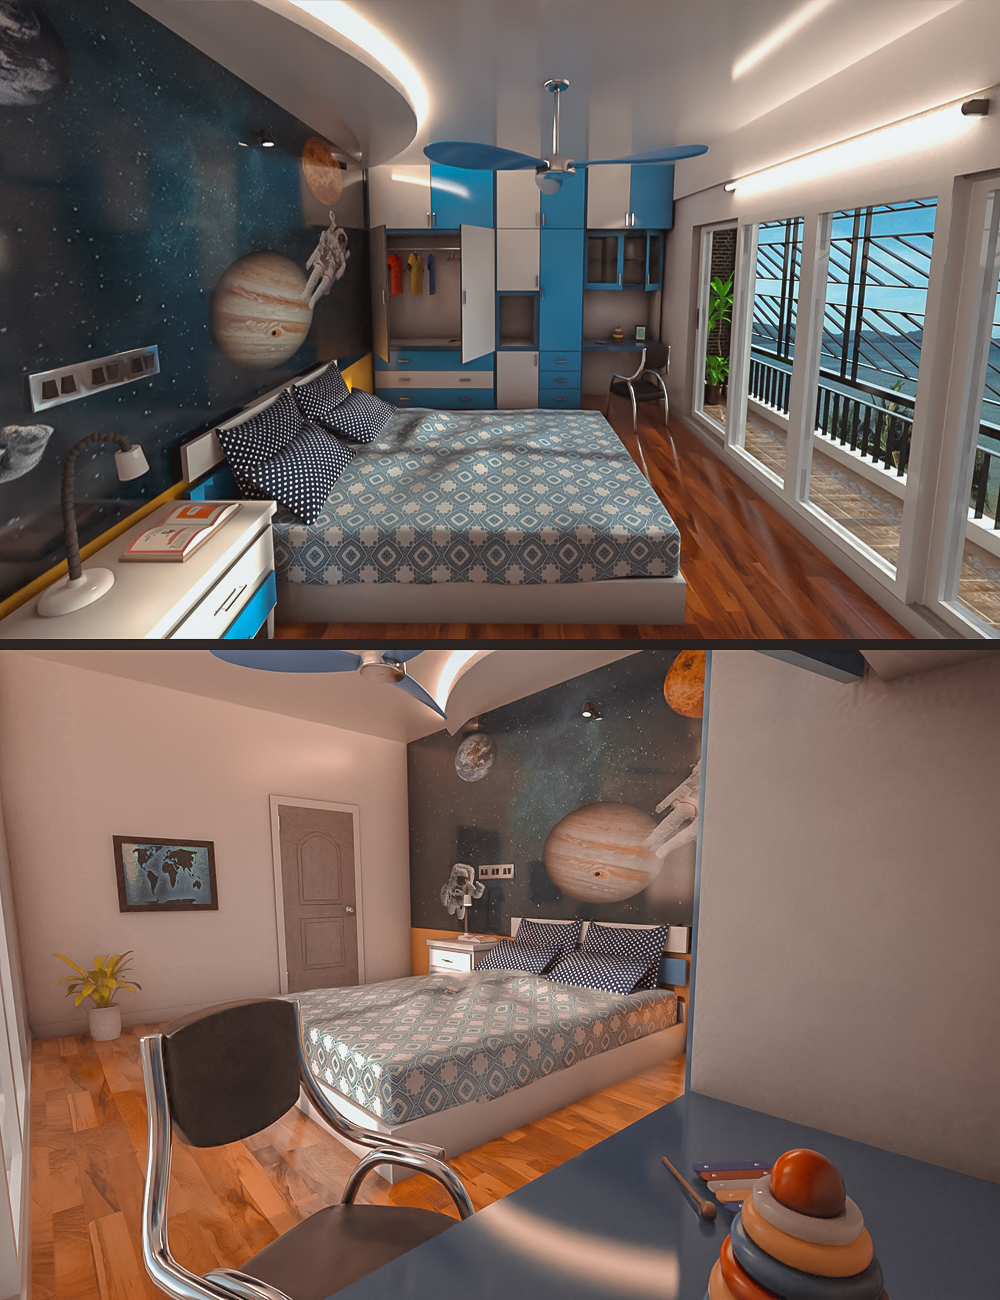 Wall Art Bedroom by: Tesla3dCorp, 3D Models by Daz 3D